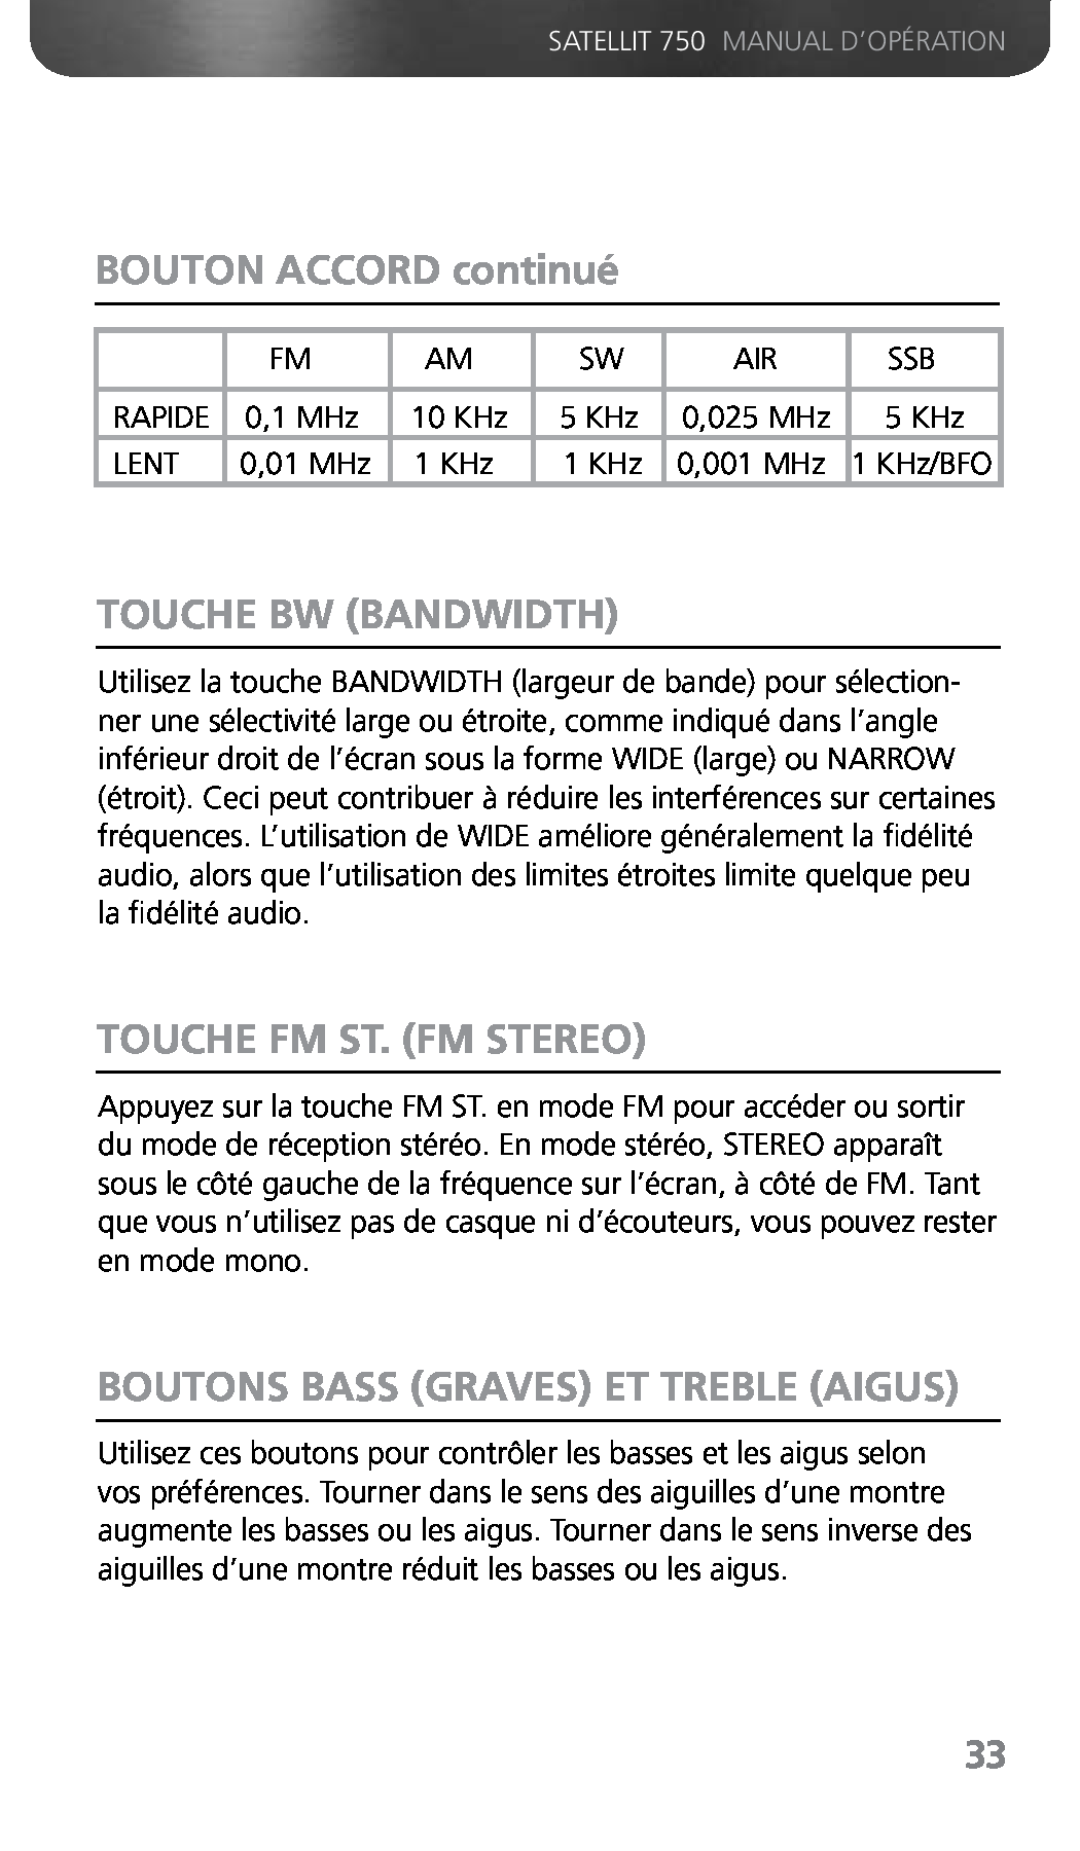 Grundig 750 BOUTON ACCORD continué, Touche Bw Bandwidth, Touche Fm St. Fm Stereo, Boutons Bass Graves Et Treble Aigus 